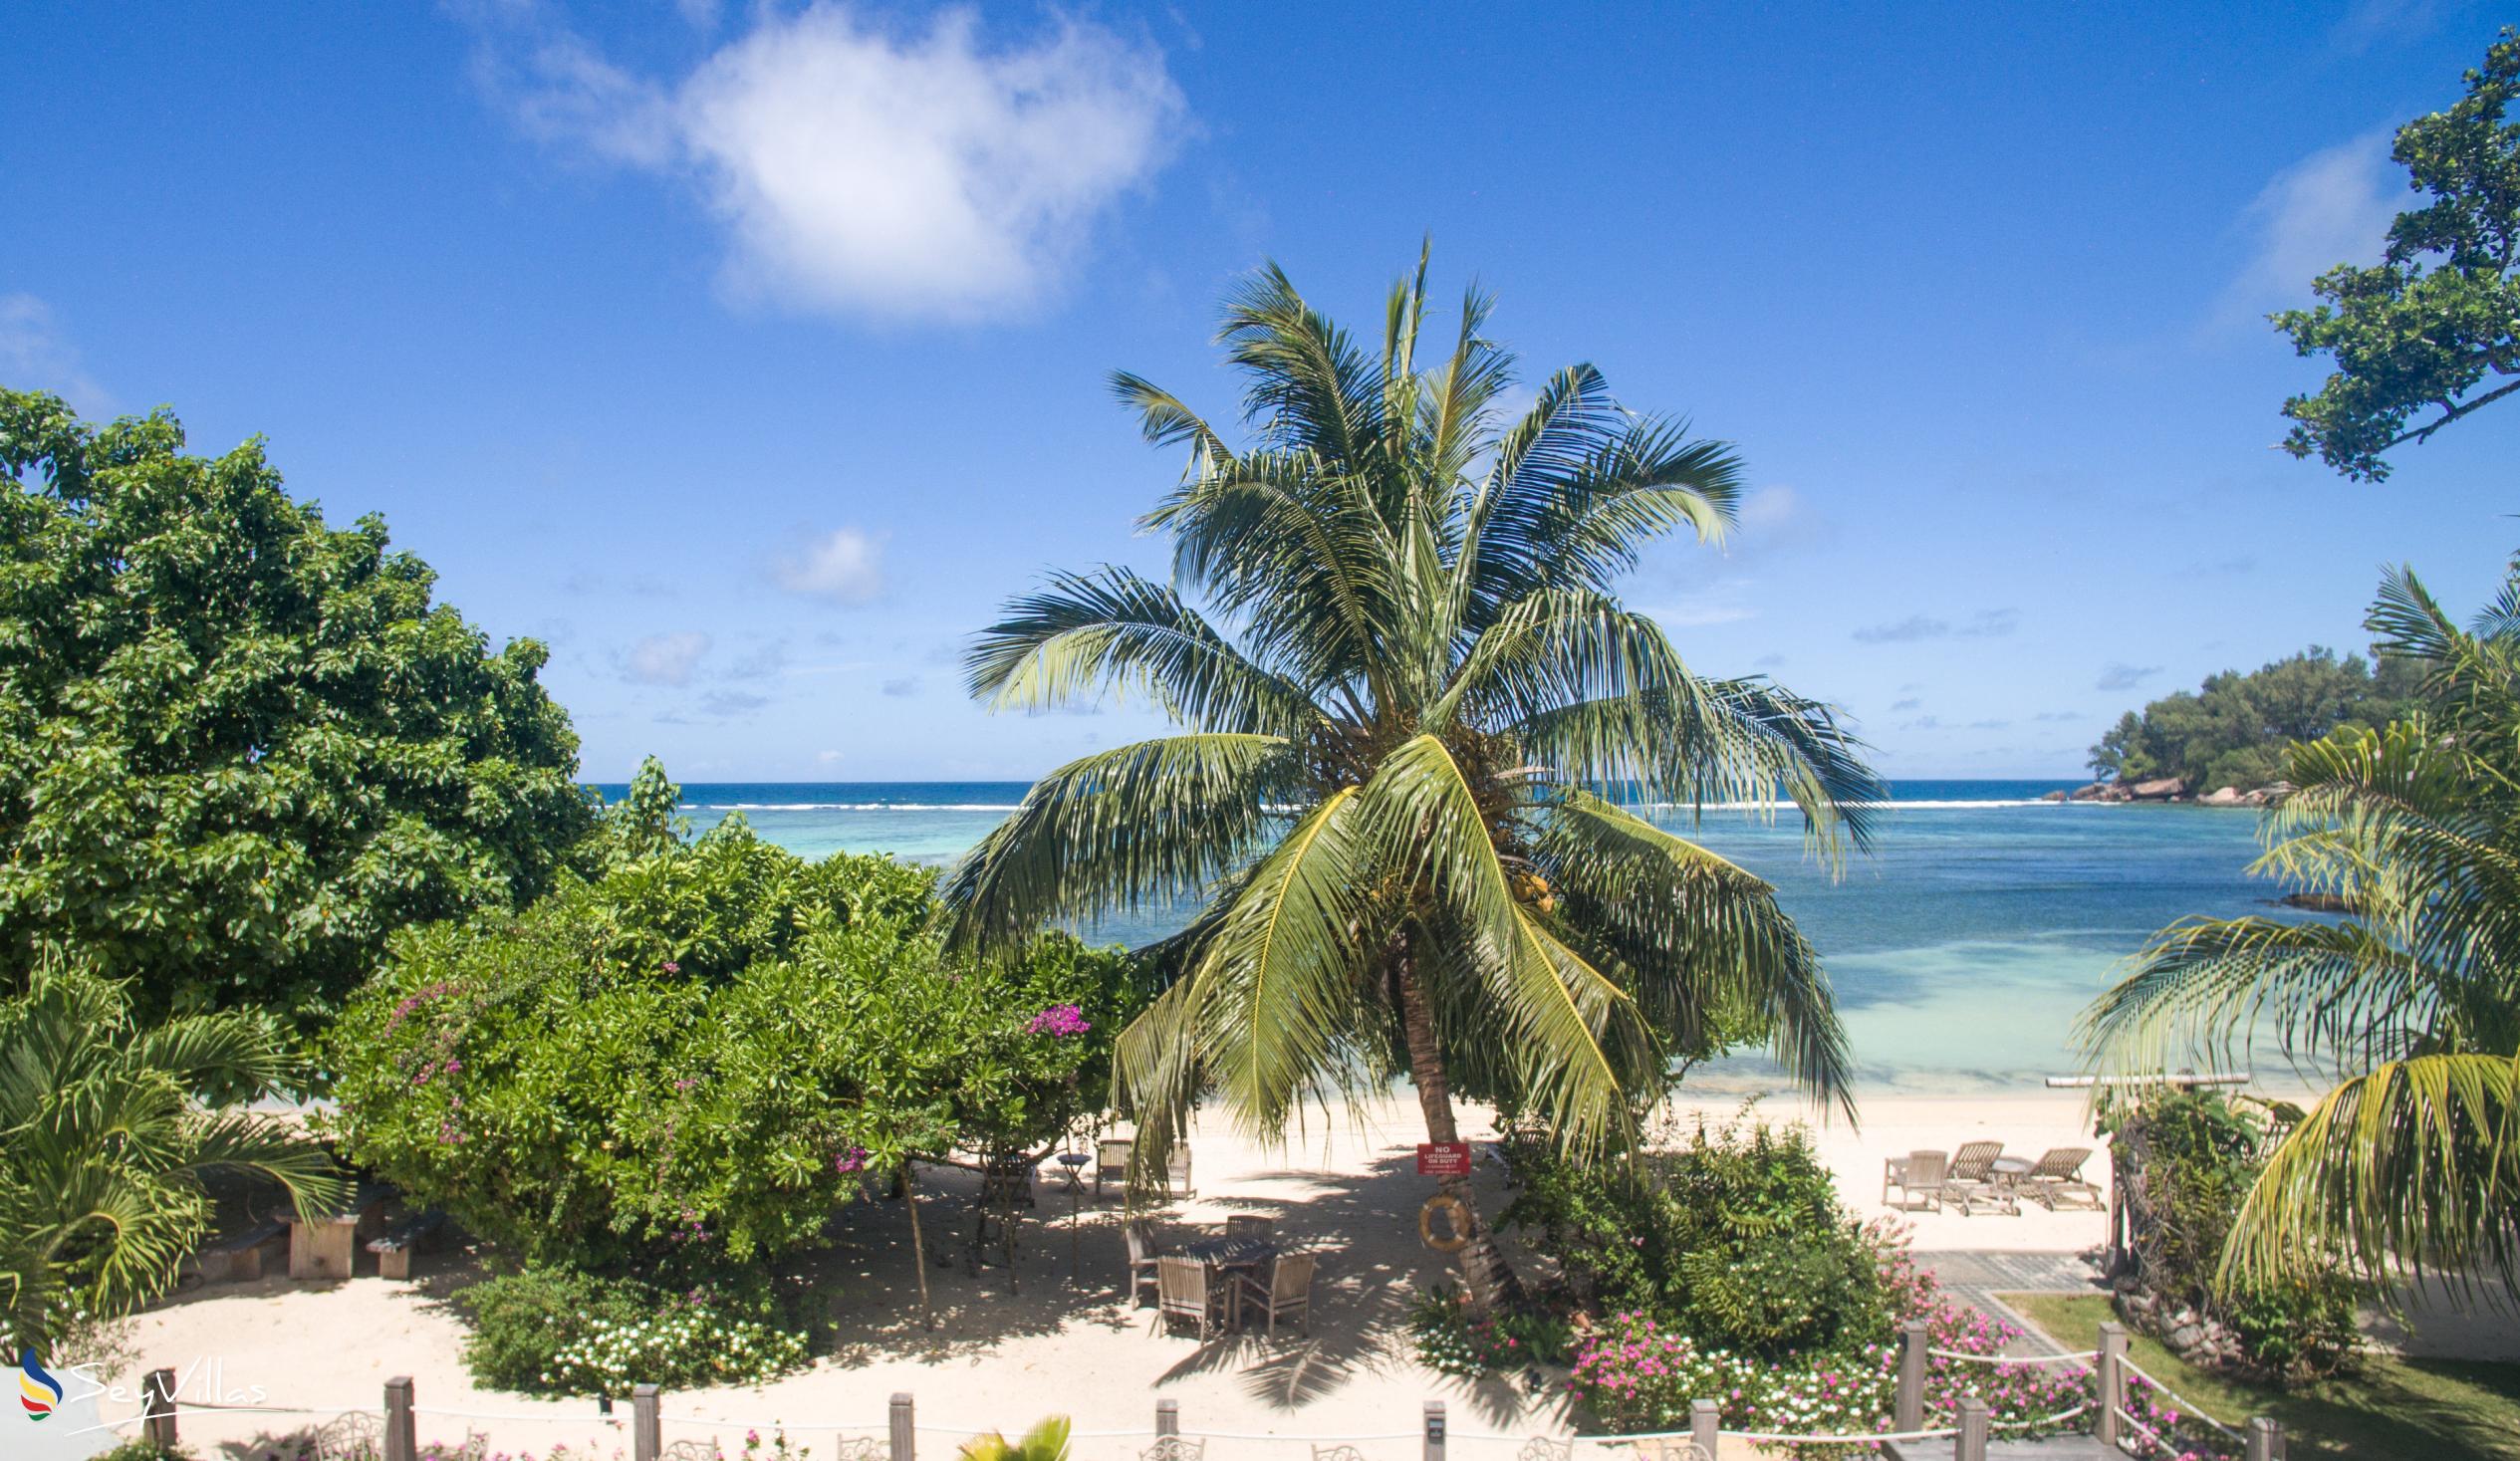 Photo 6: Crown Beach Hotel - Outdoor area - Mahé (Seychelles)